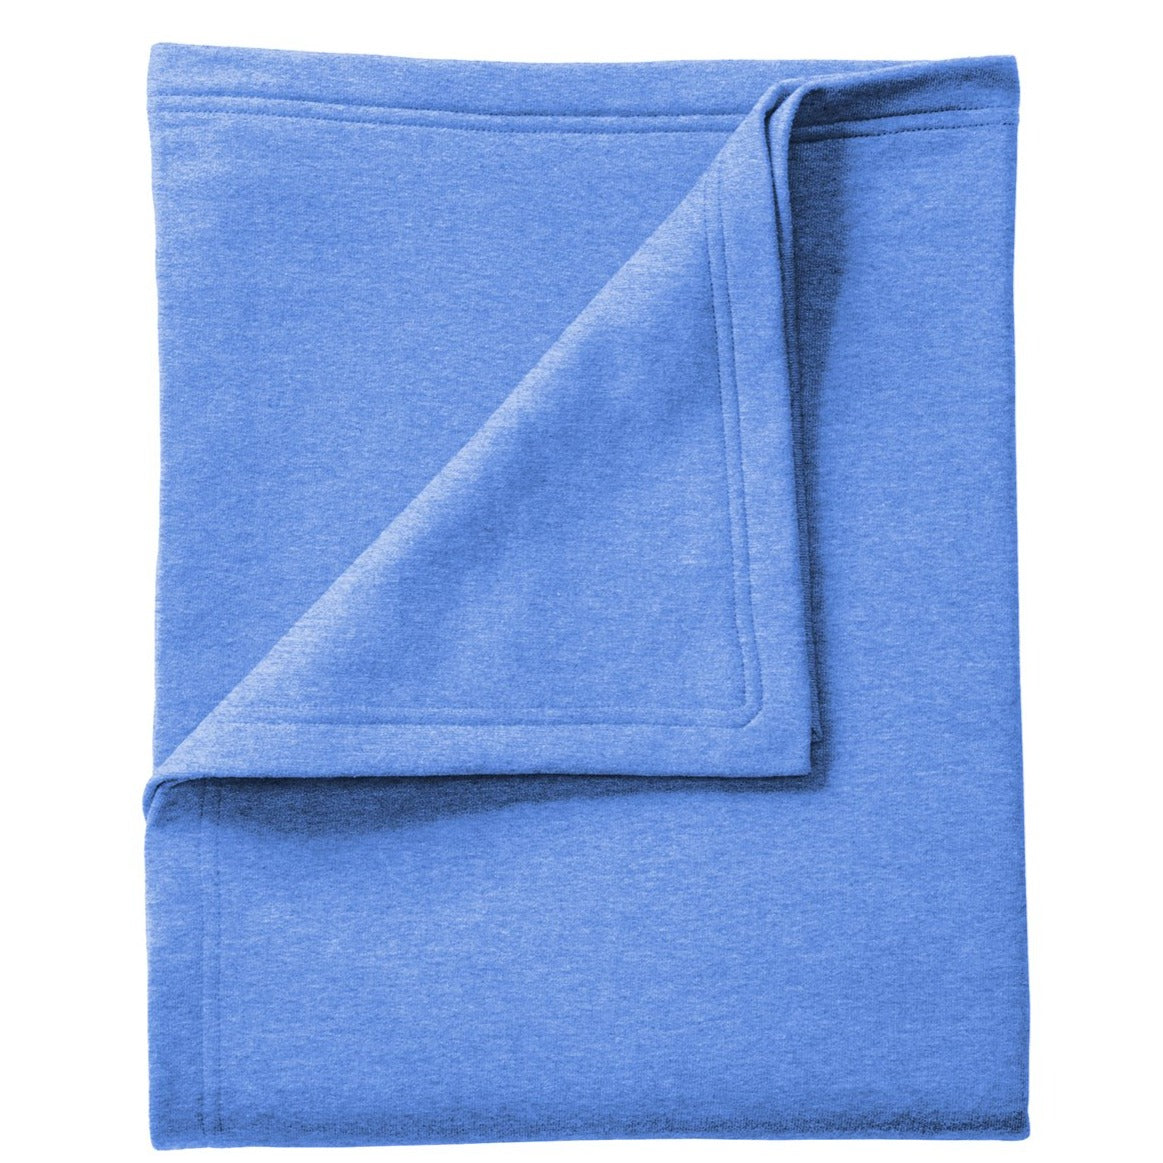 Personalized Sweatshirt Blanket